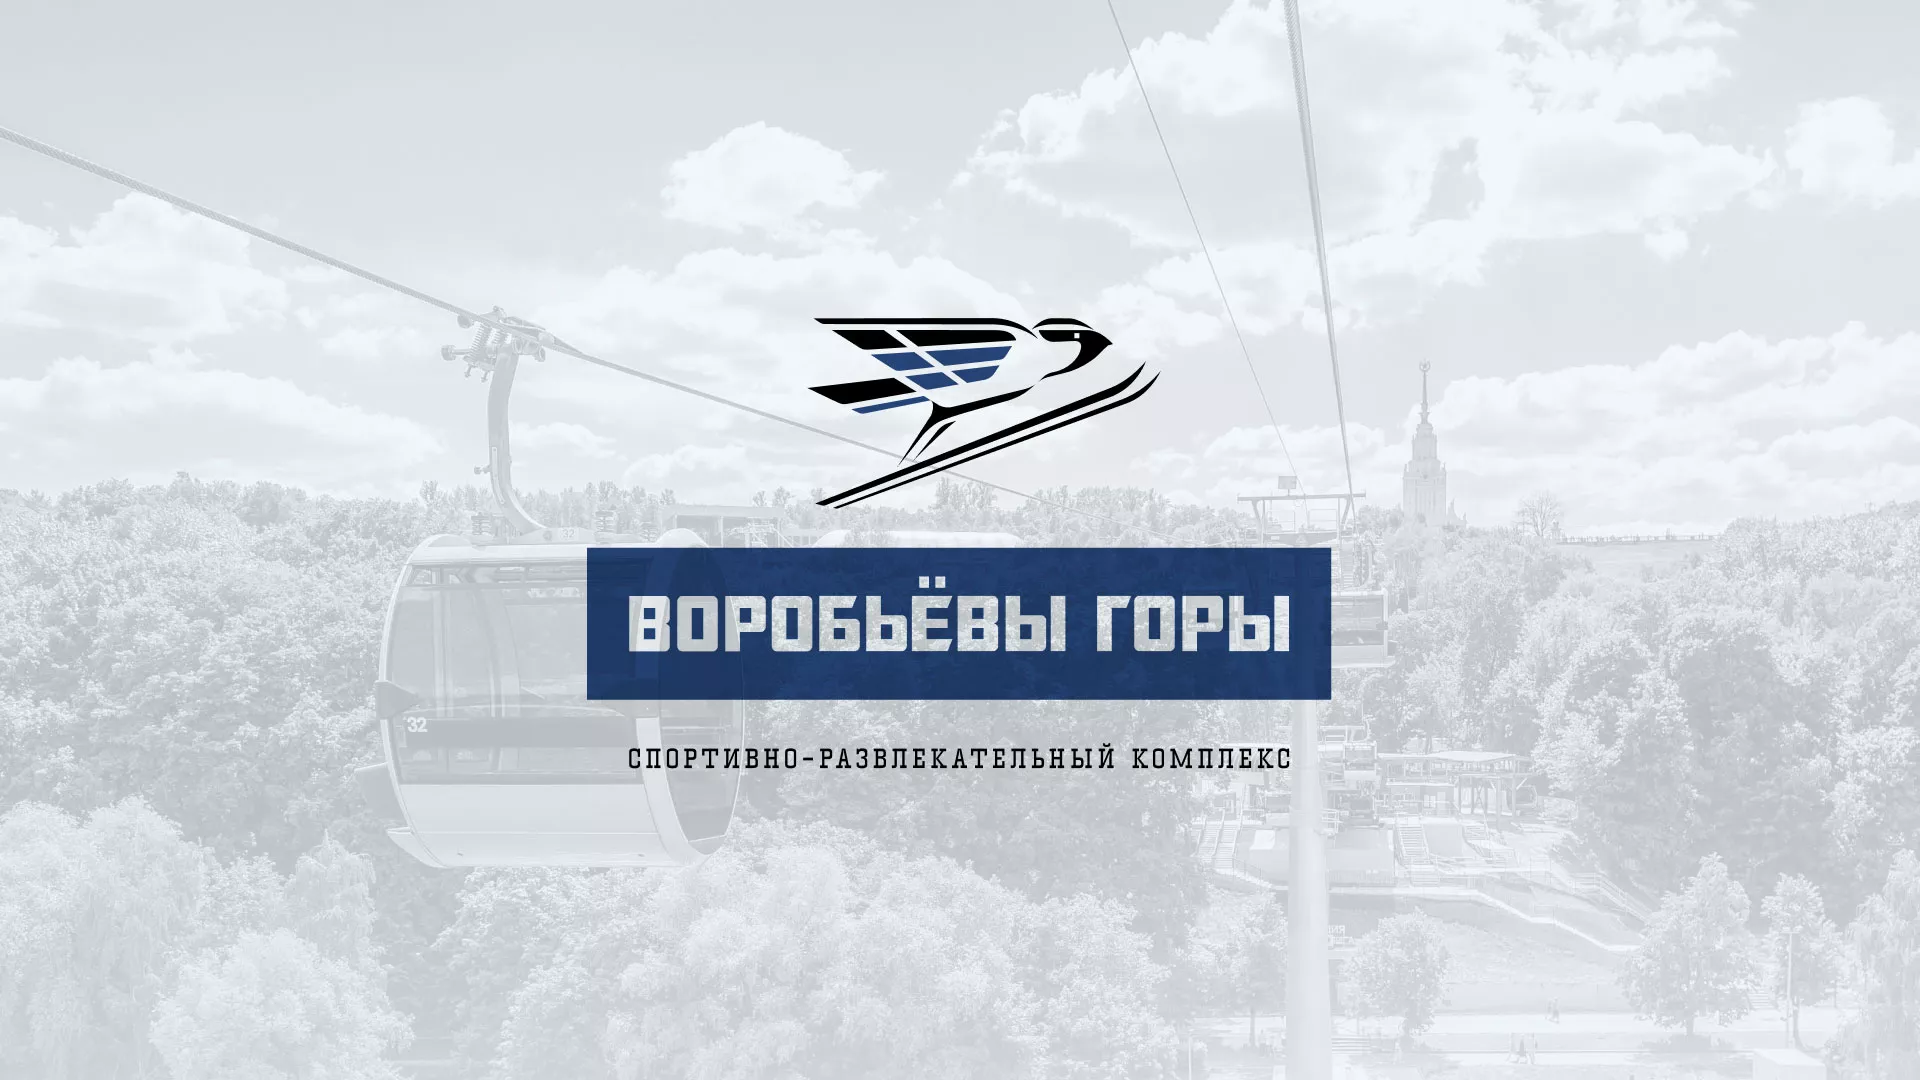 Разработка сайта в Горбатове для спортивно-развлекательного комплекса «Воробьёвы горы»